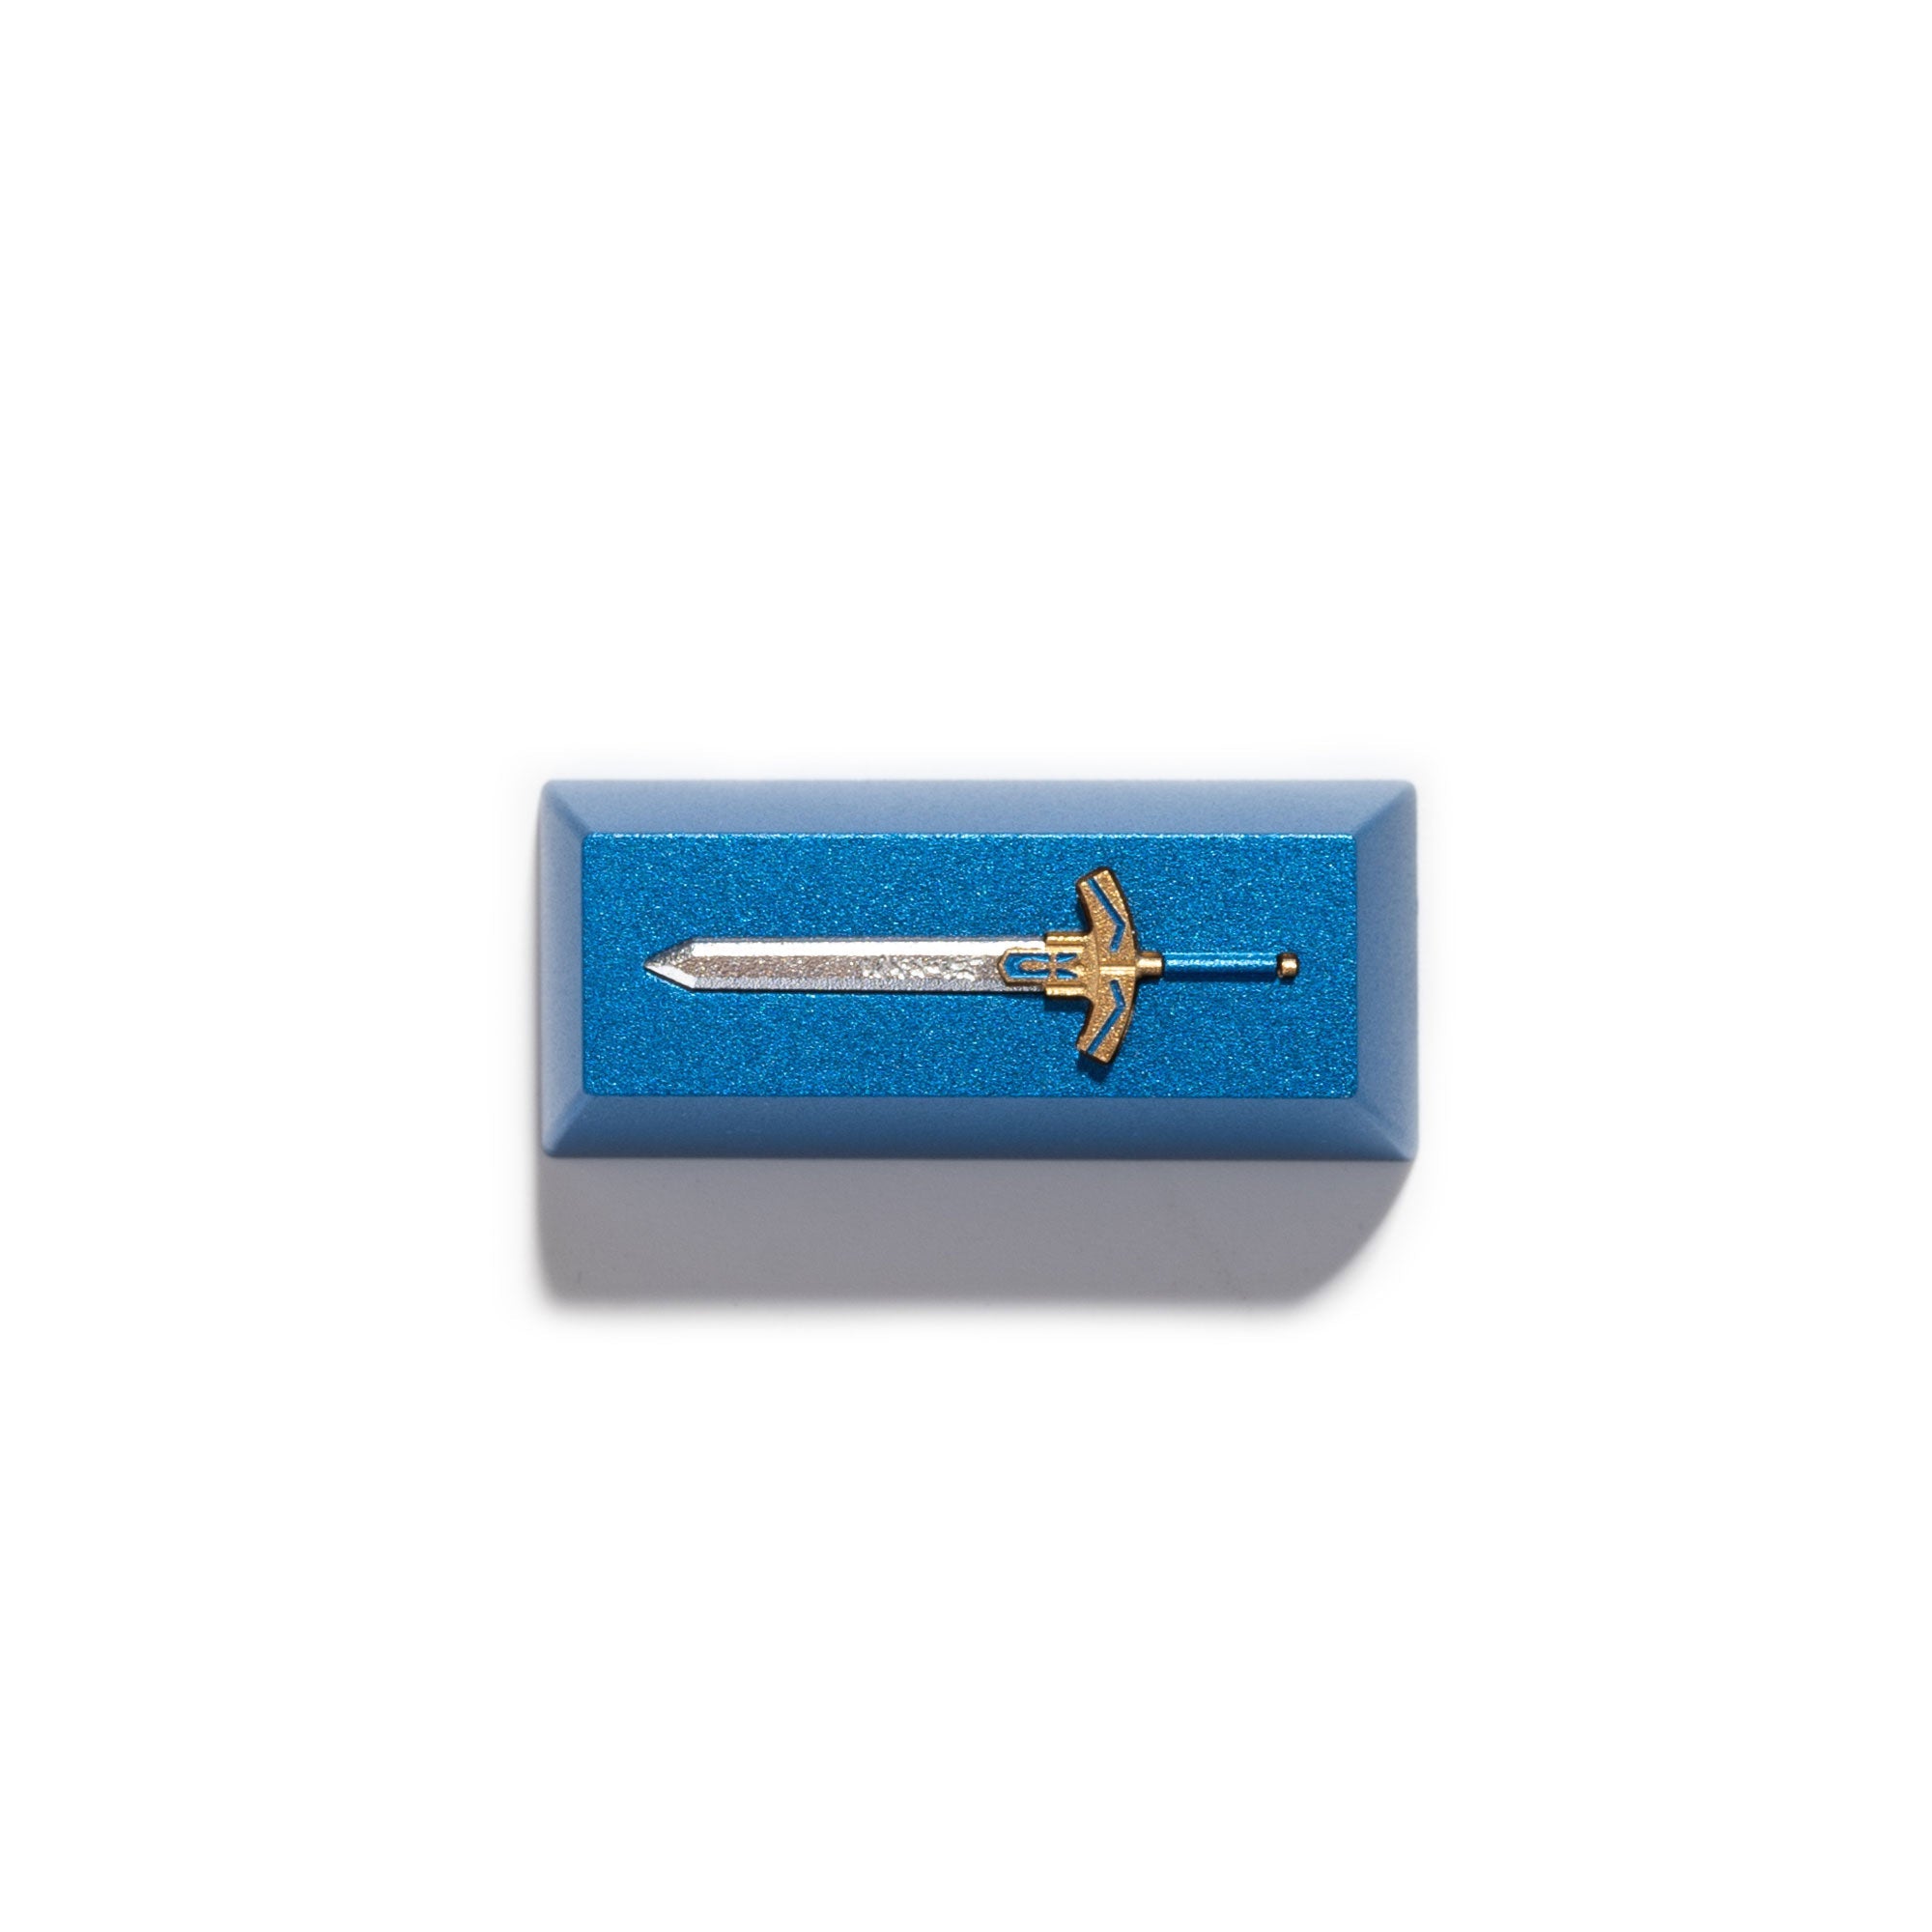 keychron-sword-artisan-keycap__PID:6262dd4b-6945-48ac-8415-6541ef523f06